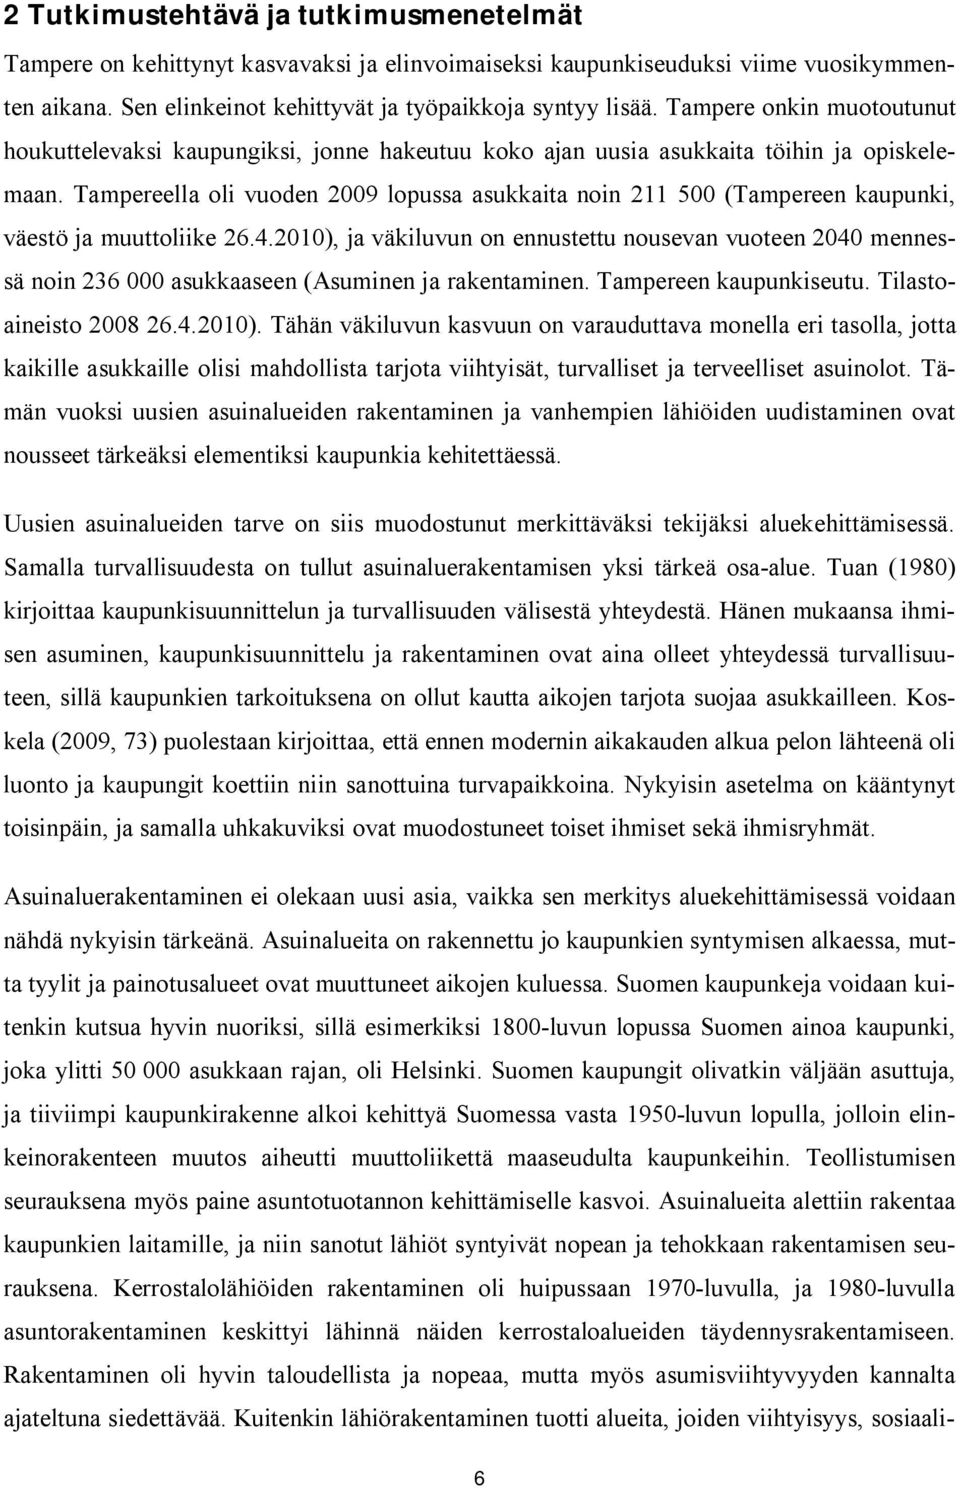 Tampereella oli vuoden 2009 lopussa asukkaita noin 211 500 (Tampereen kaupunki, väestö ja muuttoliike 26.4.